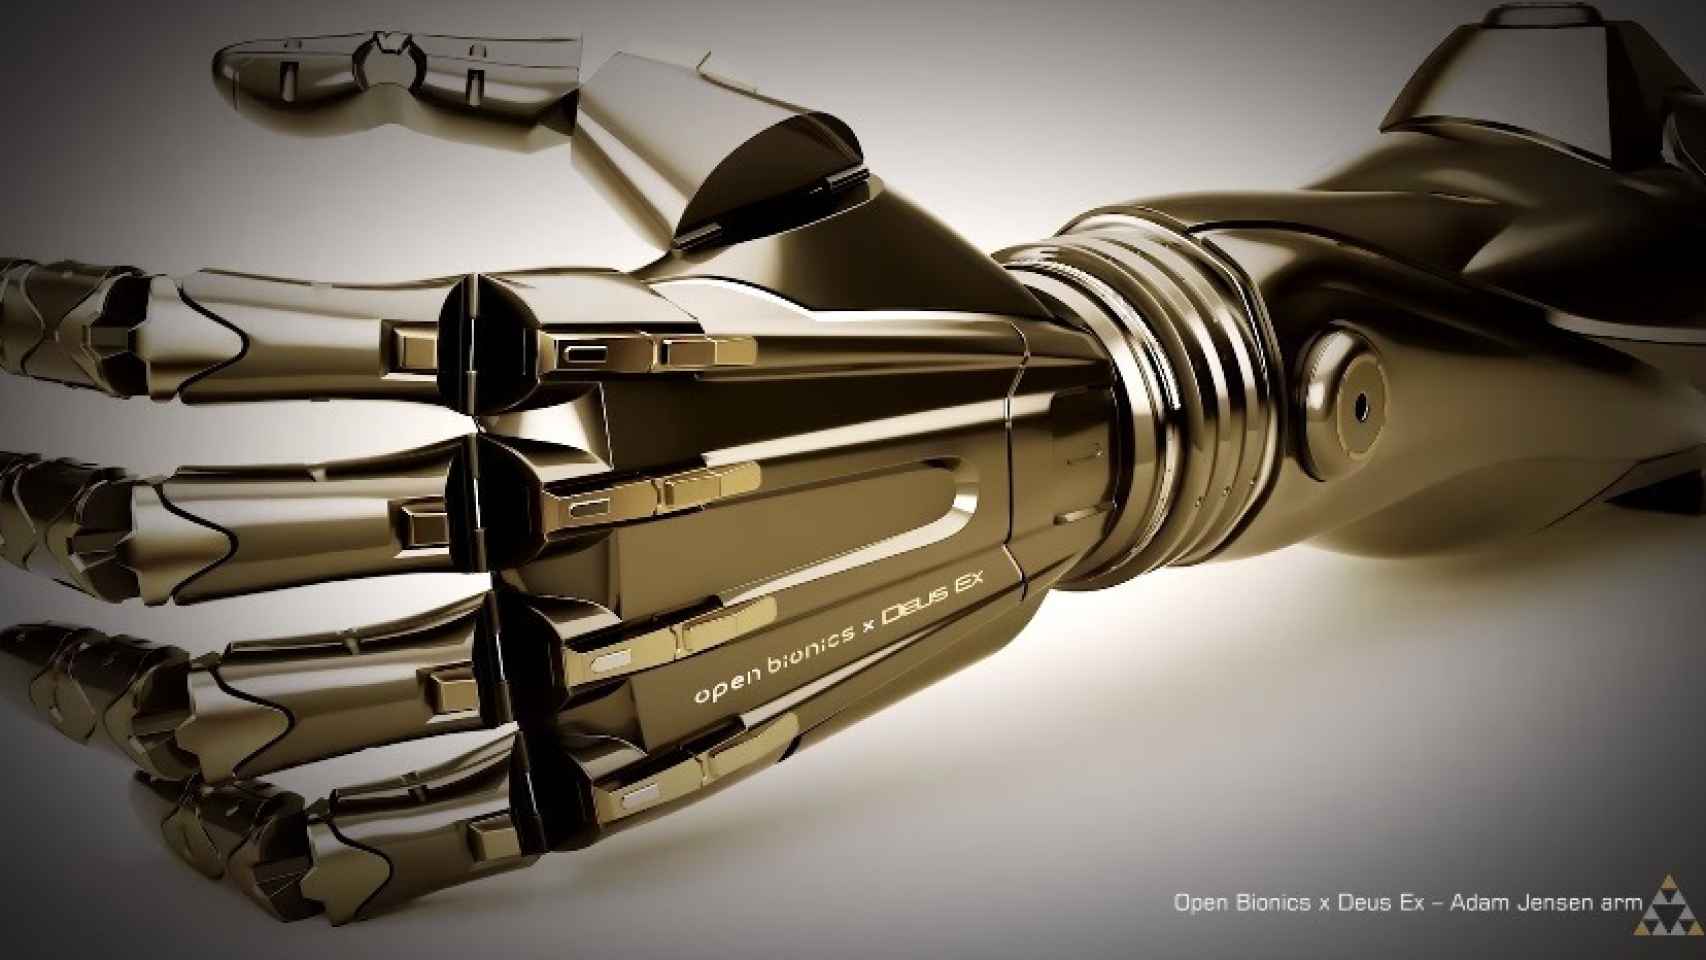 Open Bionic x Deus Ex, brazo biónico real de Adam Jensen